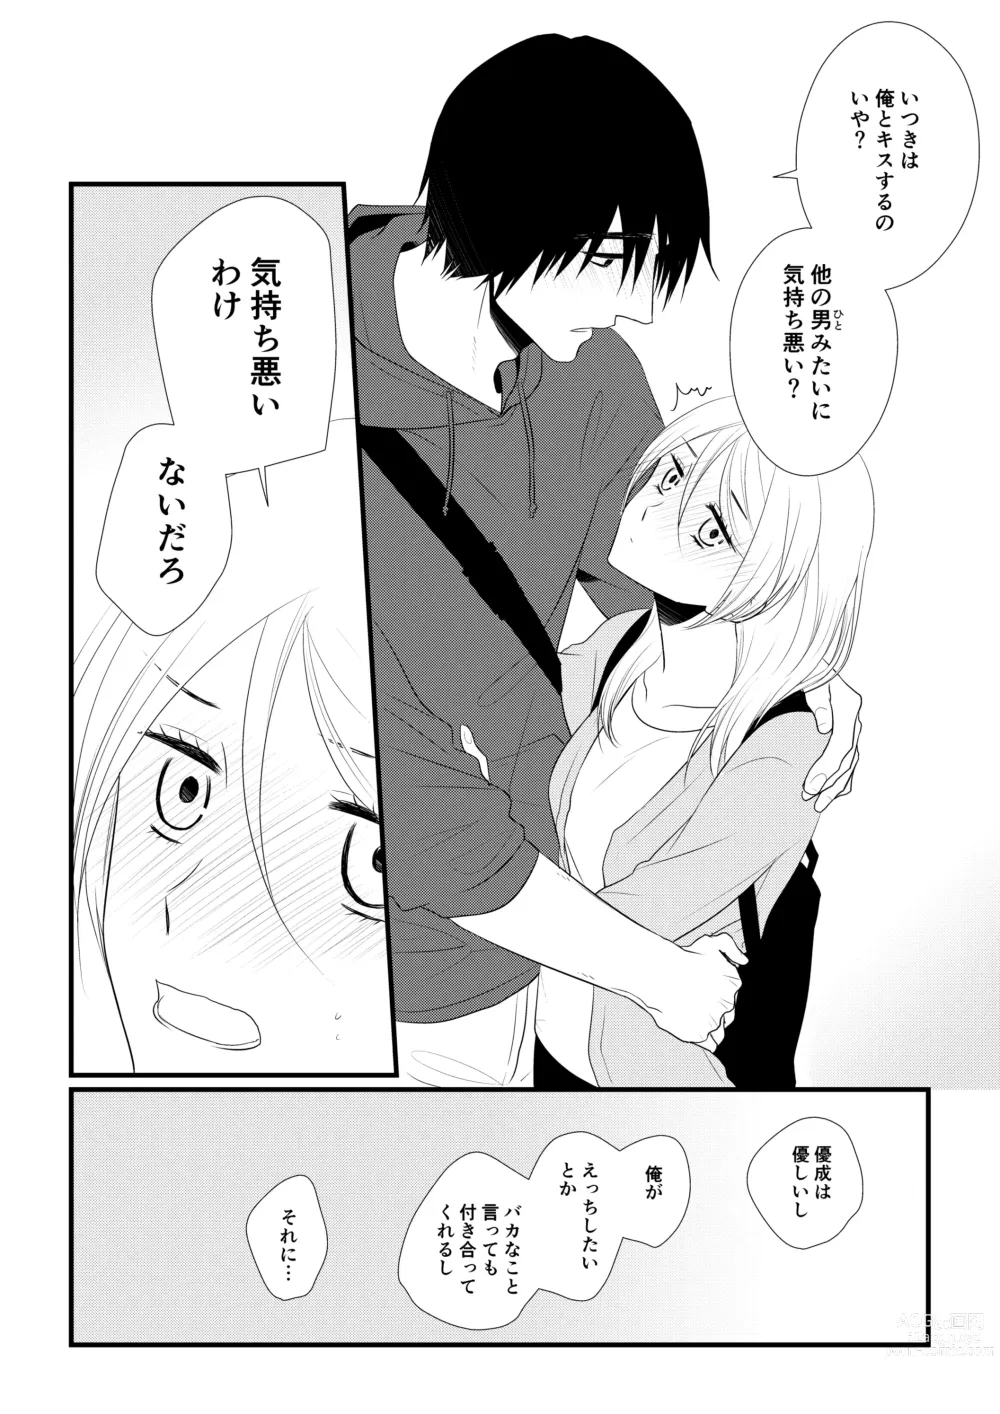 Page 123 of doujinshi Itsuki to Yuusei